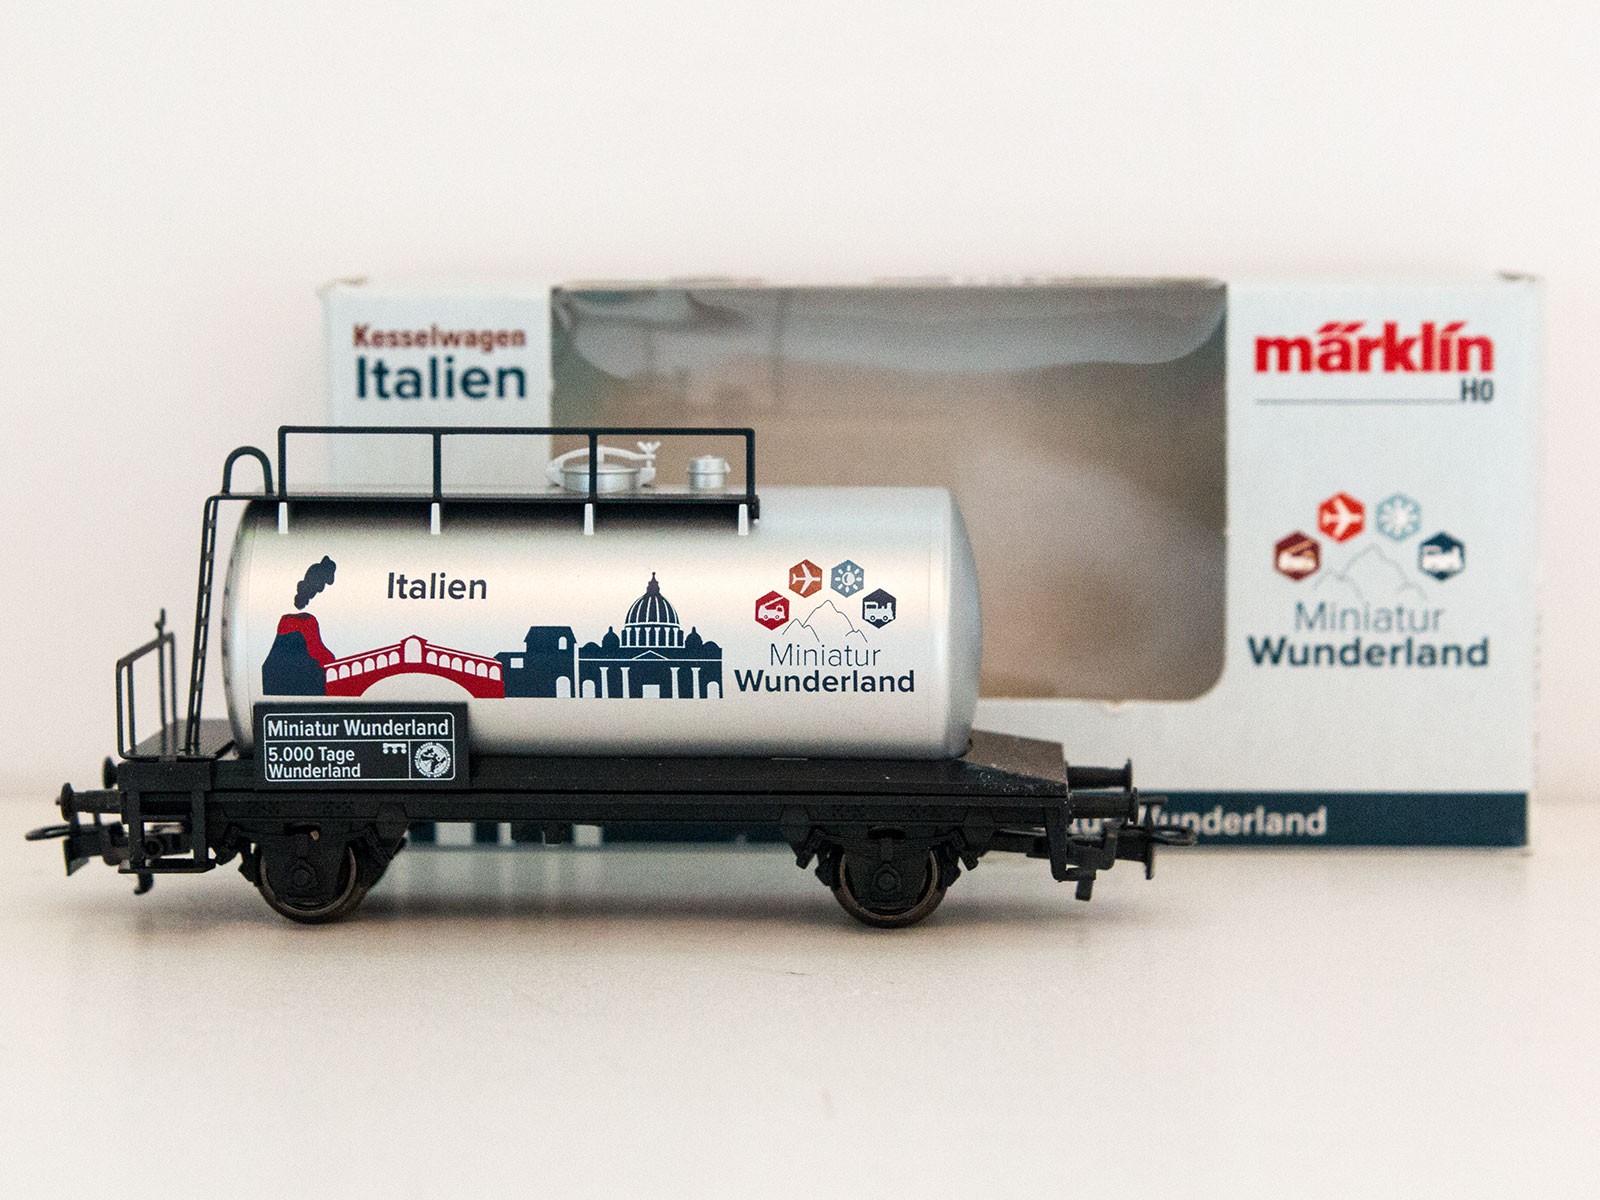 Special Edition H0 Märklin 2015 tankwagon "5000 Tage Wunderland - Italien"